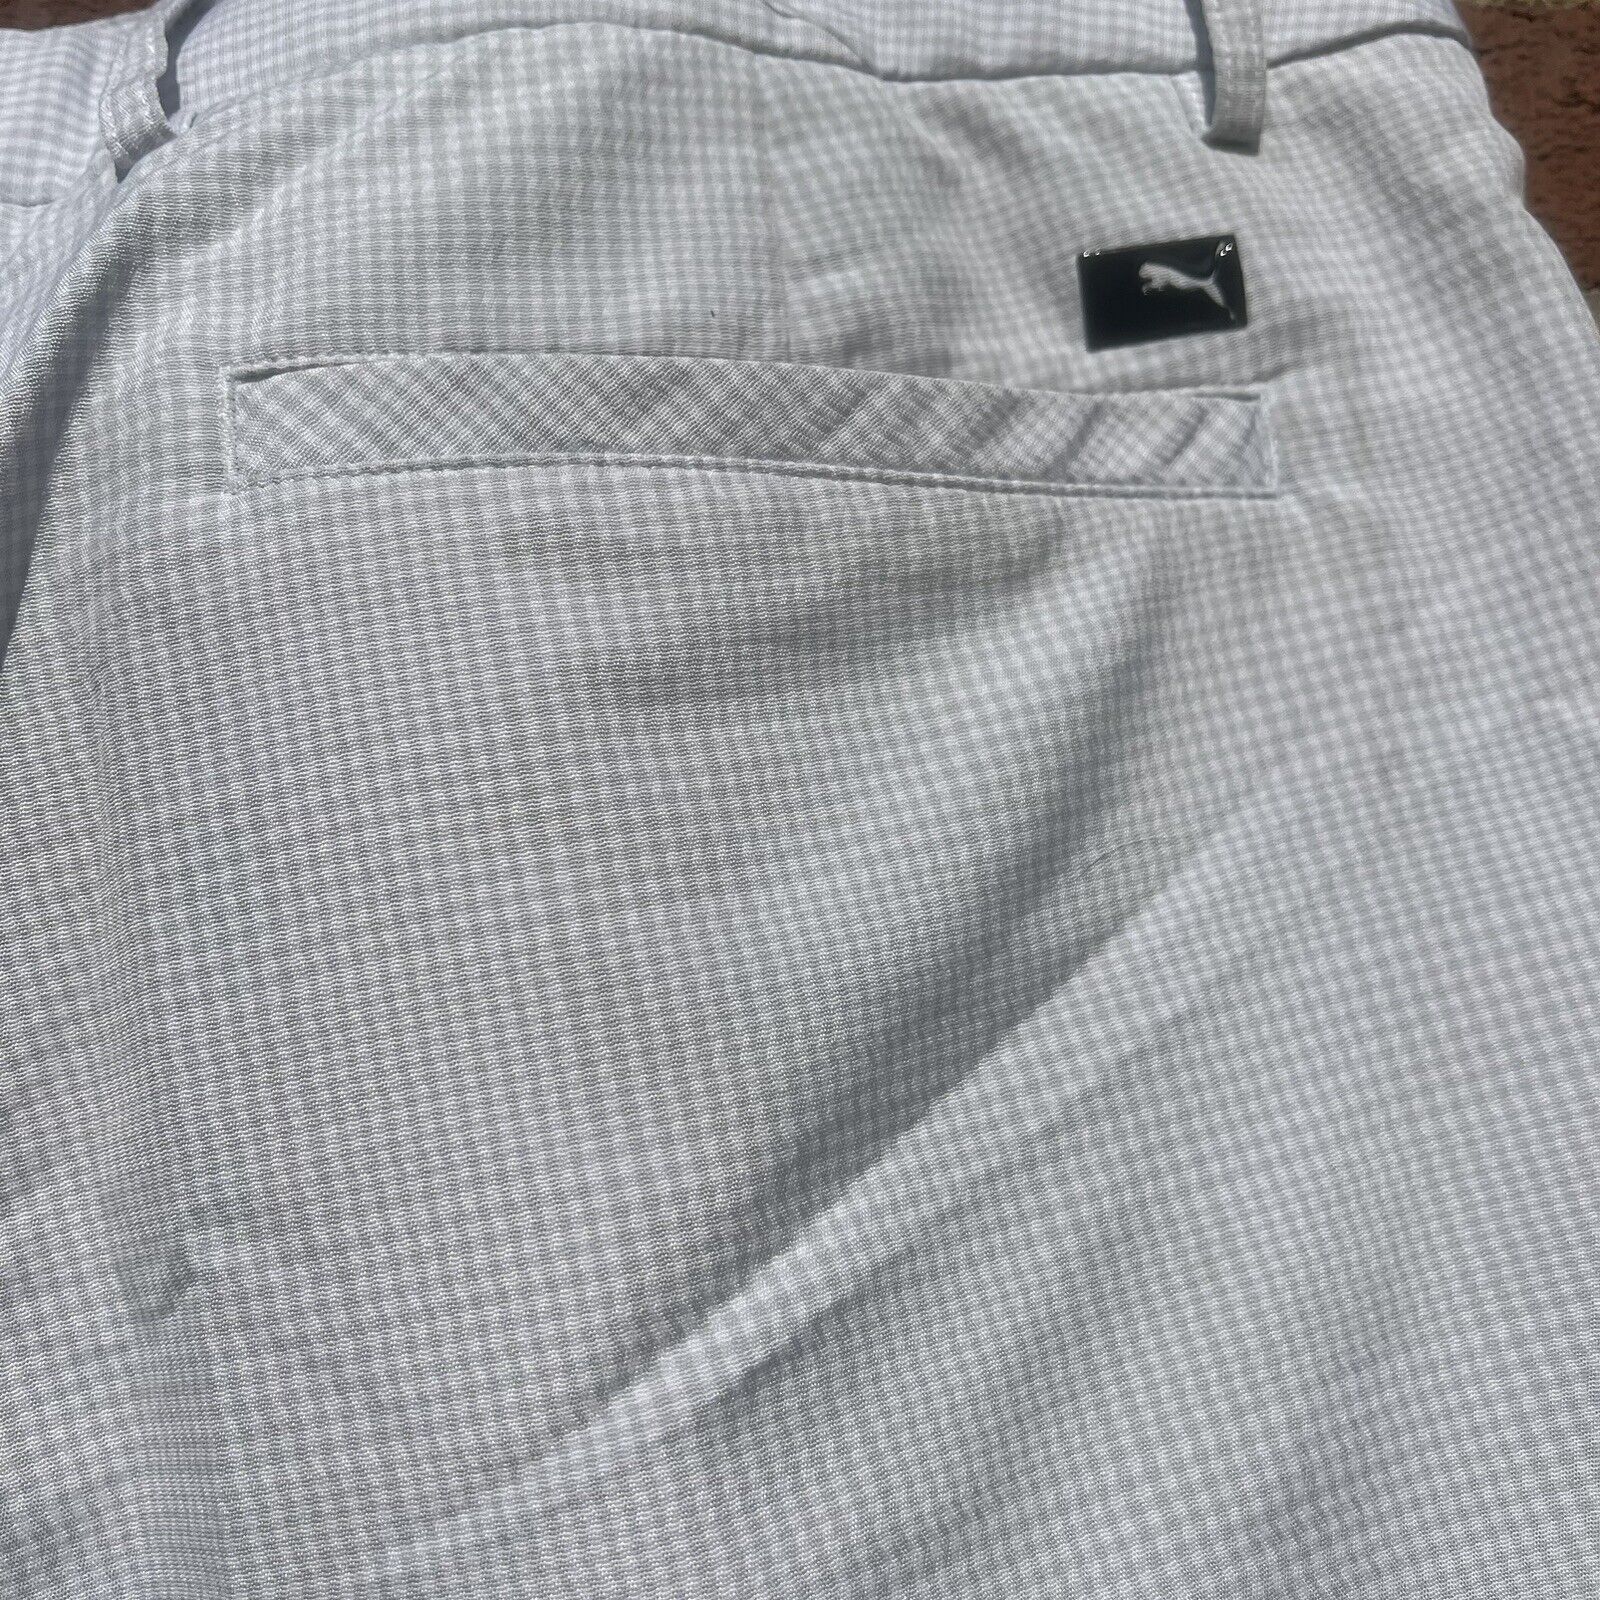 PUMA Golf Shorts Mens Size 40 Gray Checked Chino … - image 3